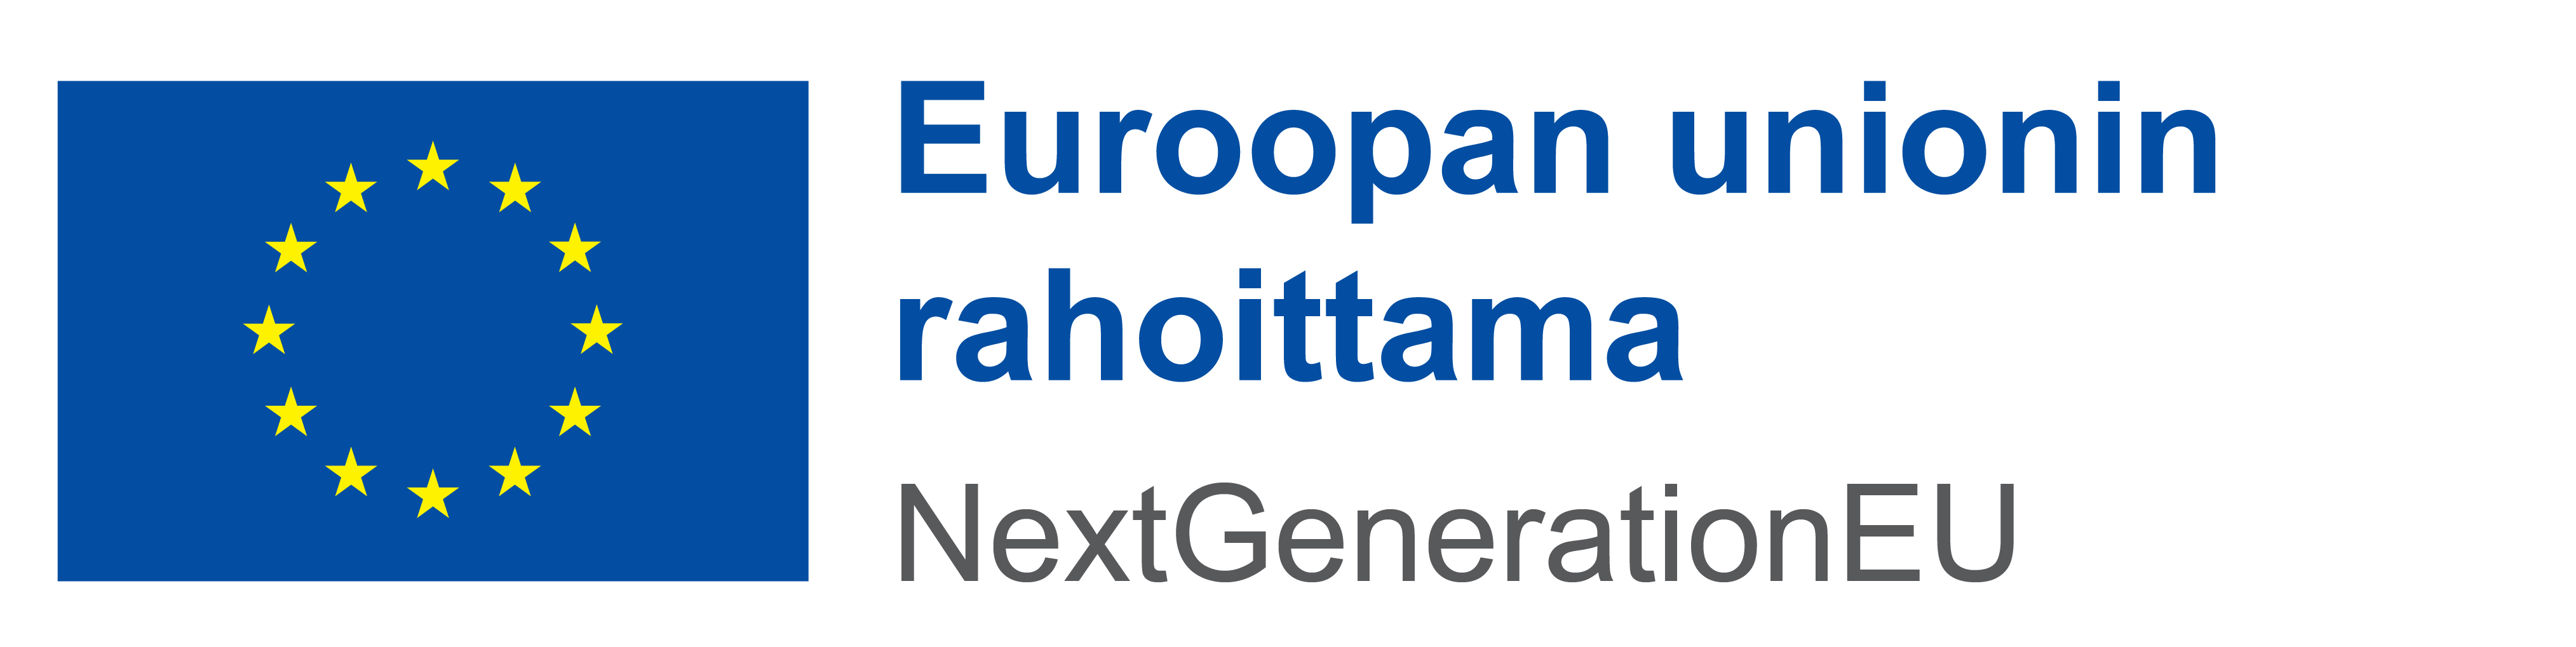 EU:n lippu ja vieressä teksti: Euroopan unionin rahoittama, NextGenerationEU